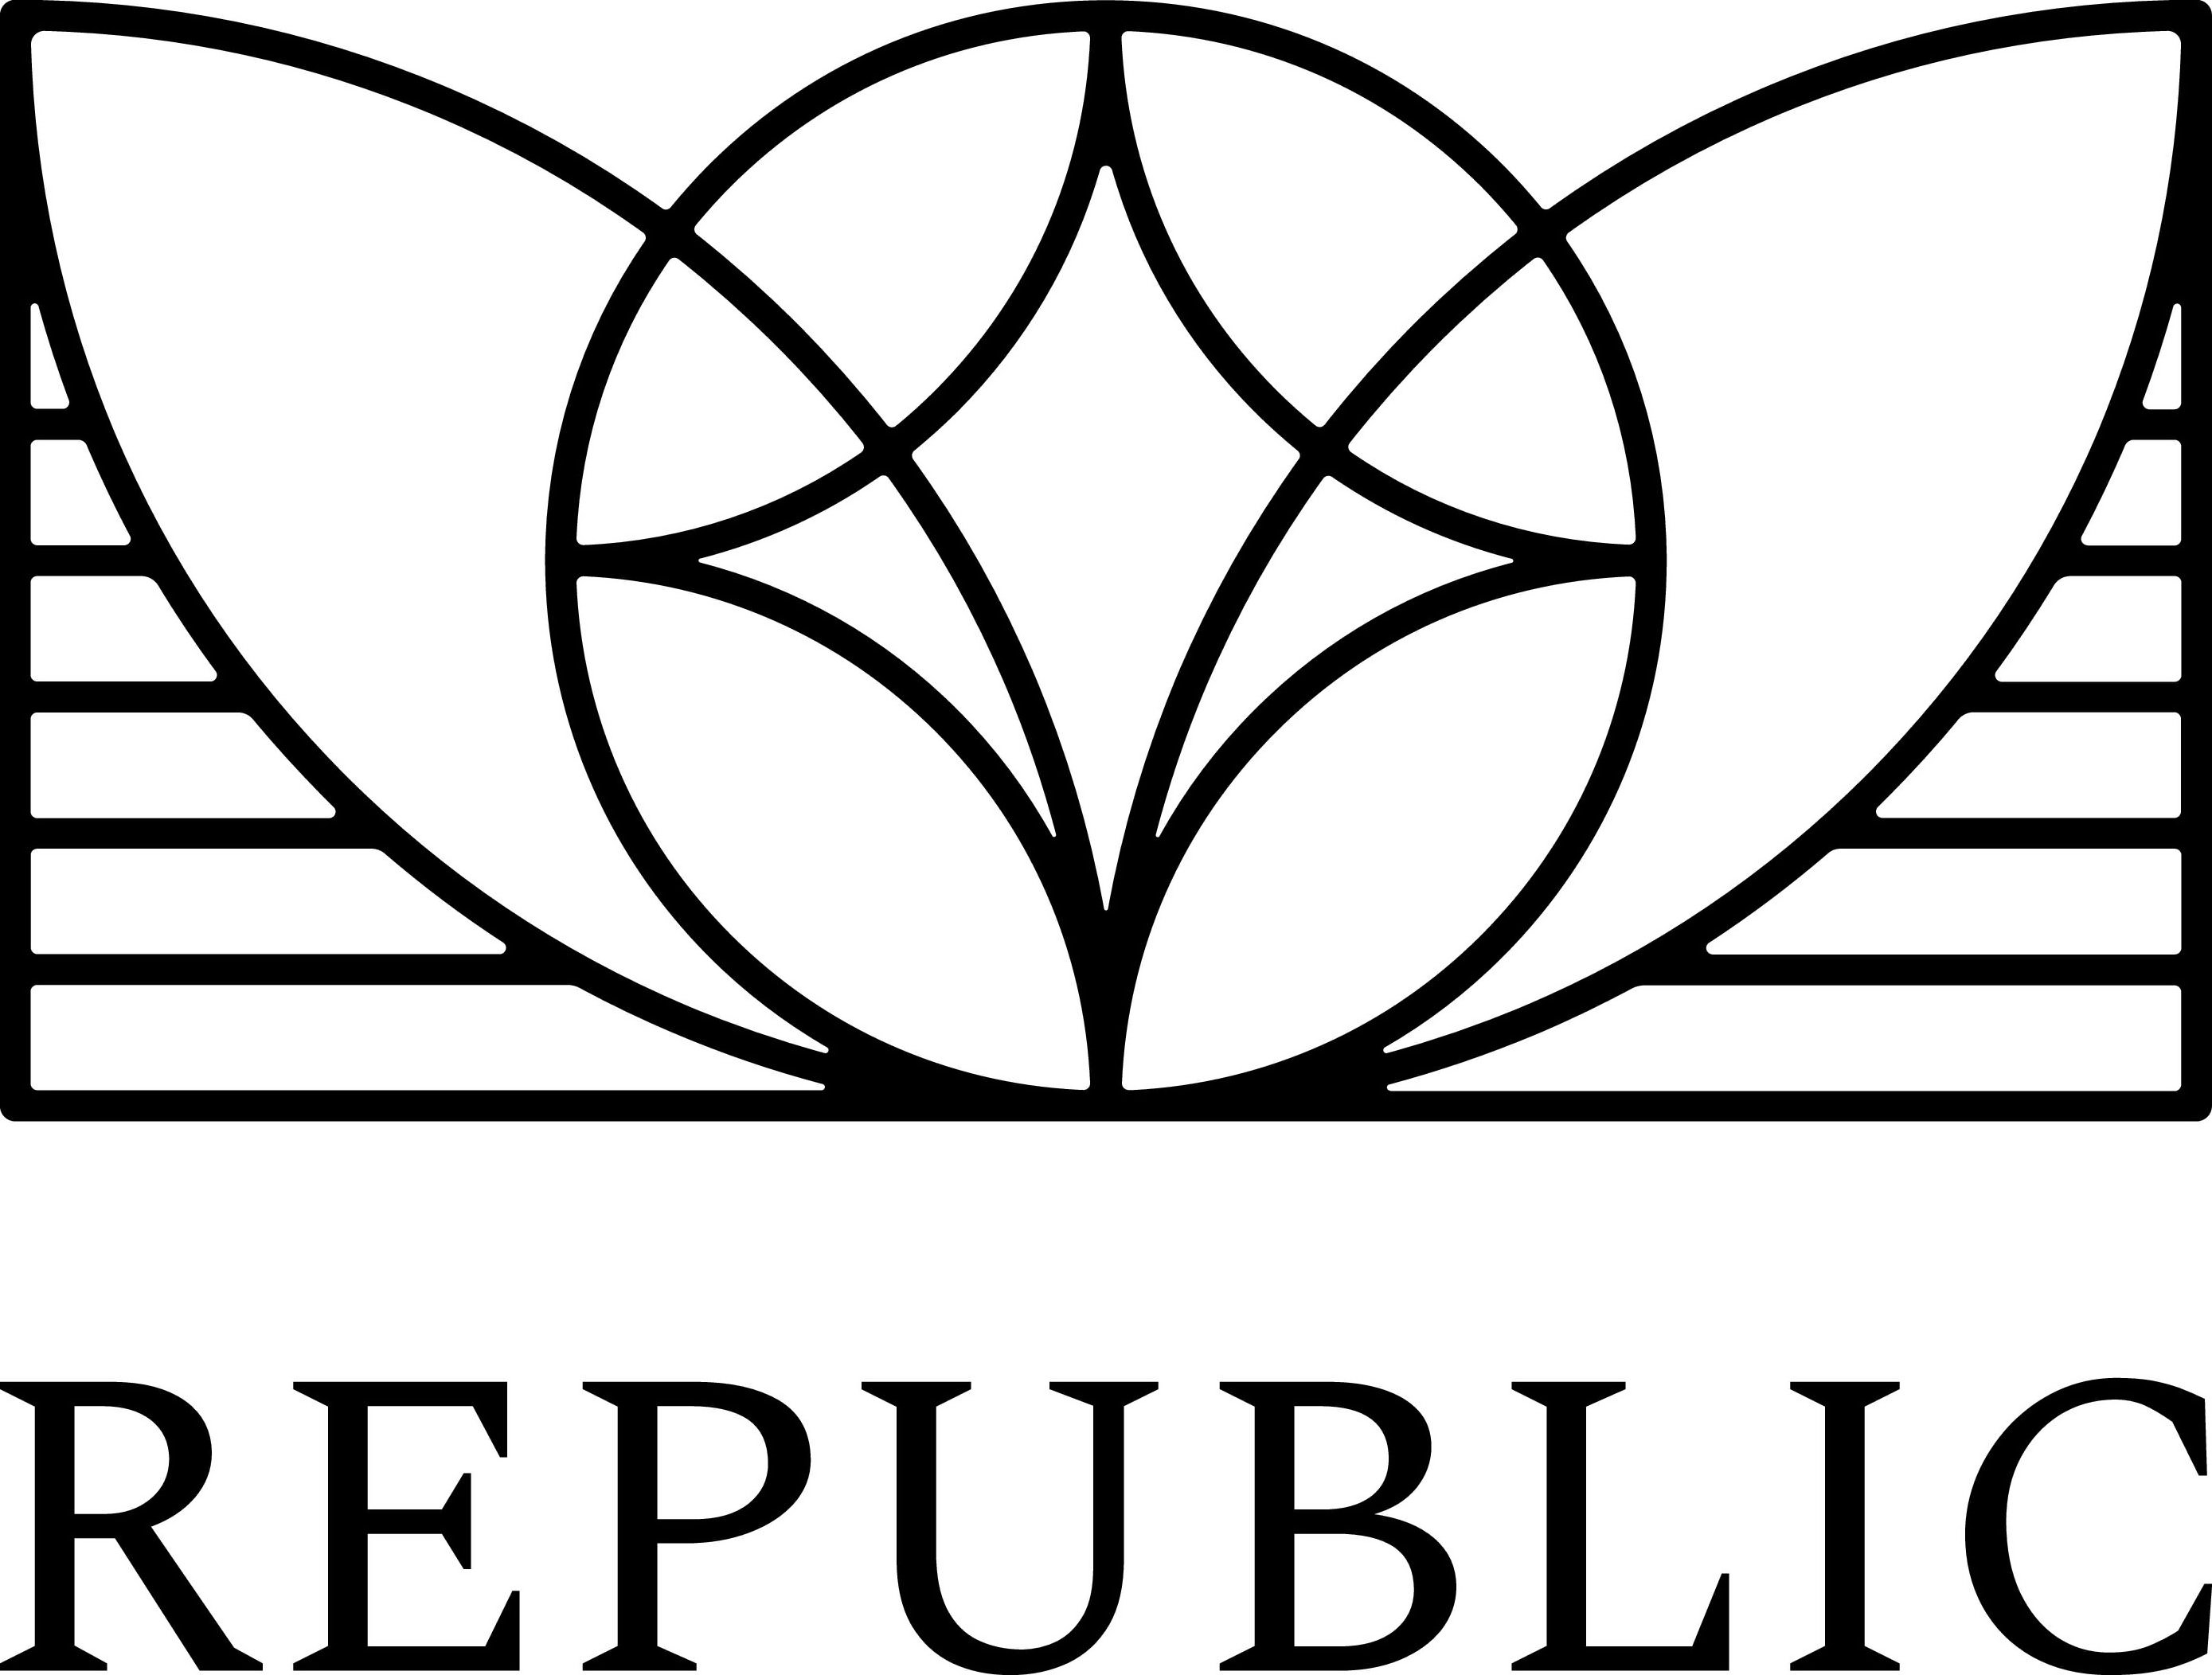 REPUBLIC